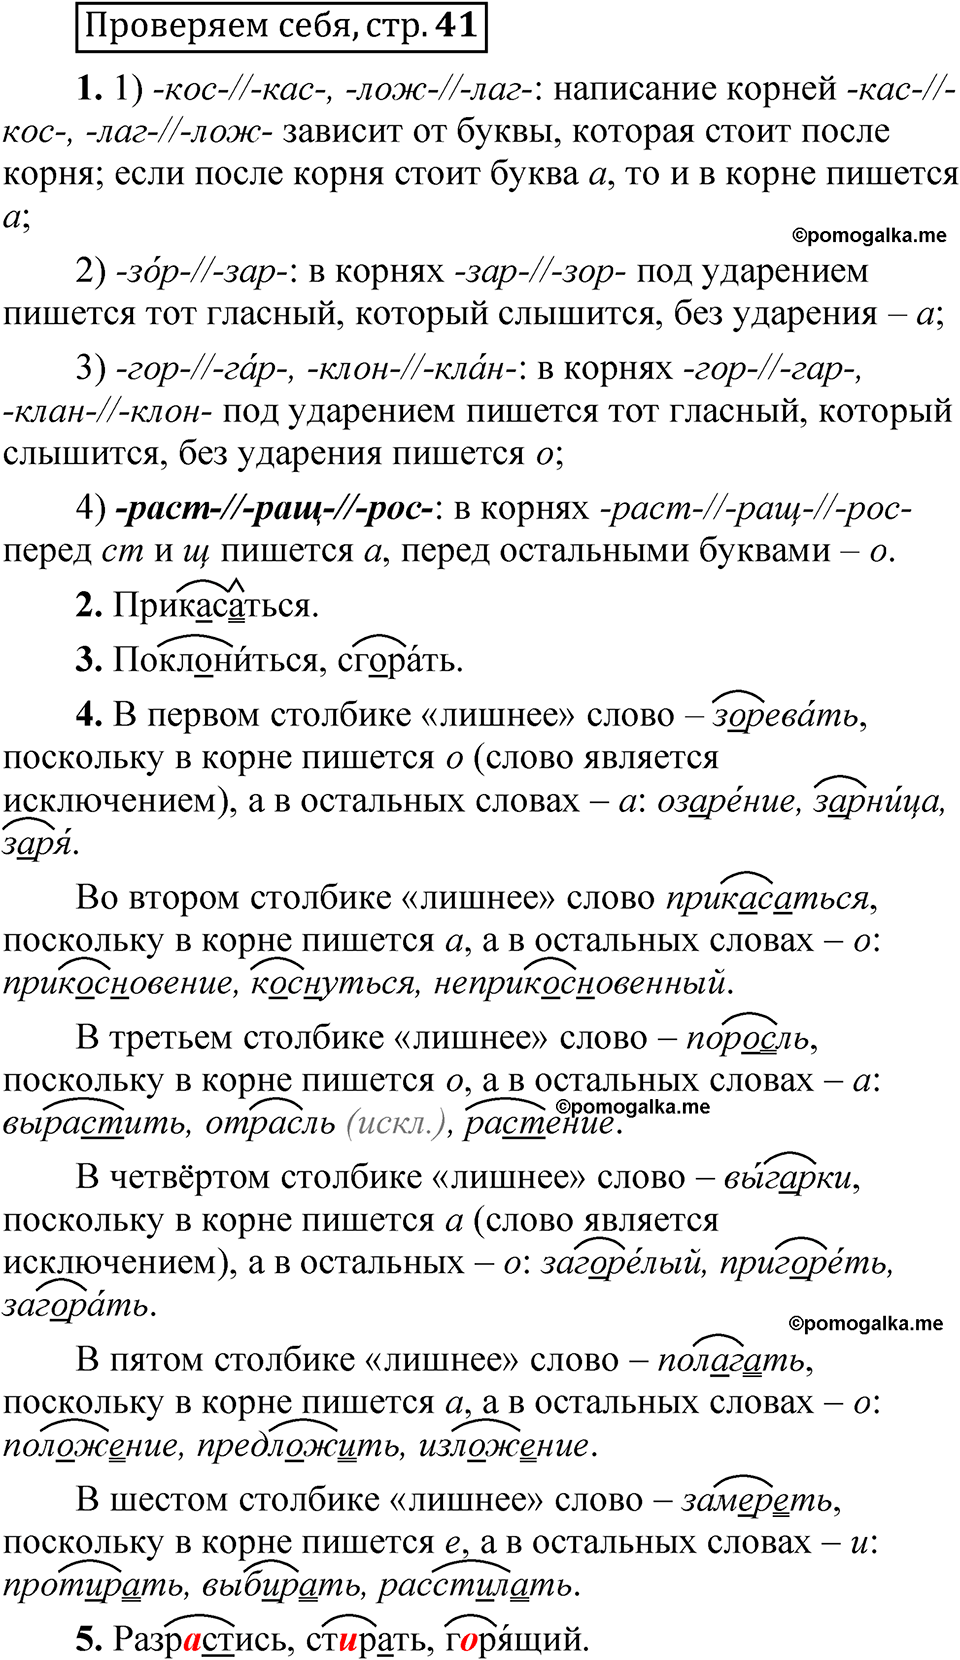 страница 41 Проверяем себя русский язык 5 класс Быстрова, Кибирева 2 часть 2021 год